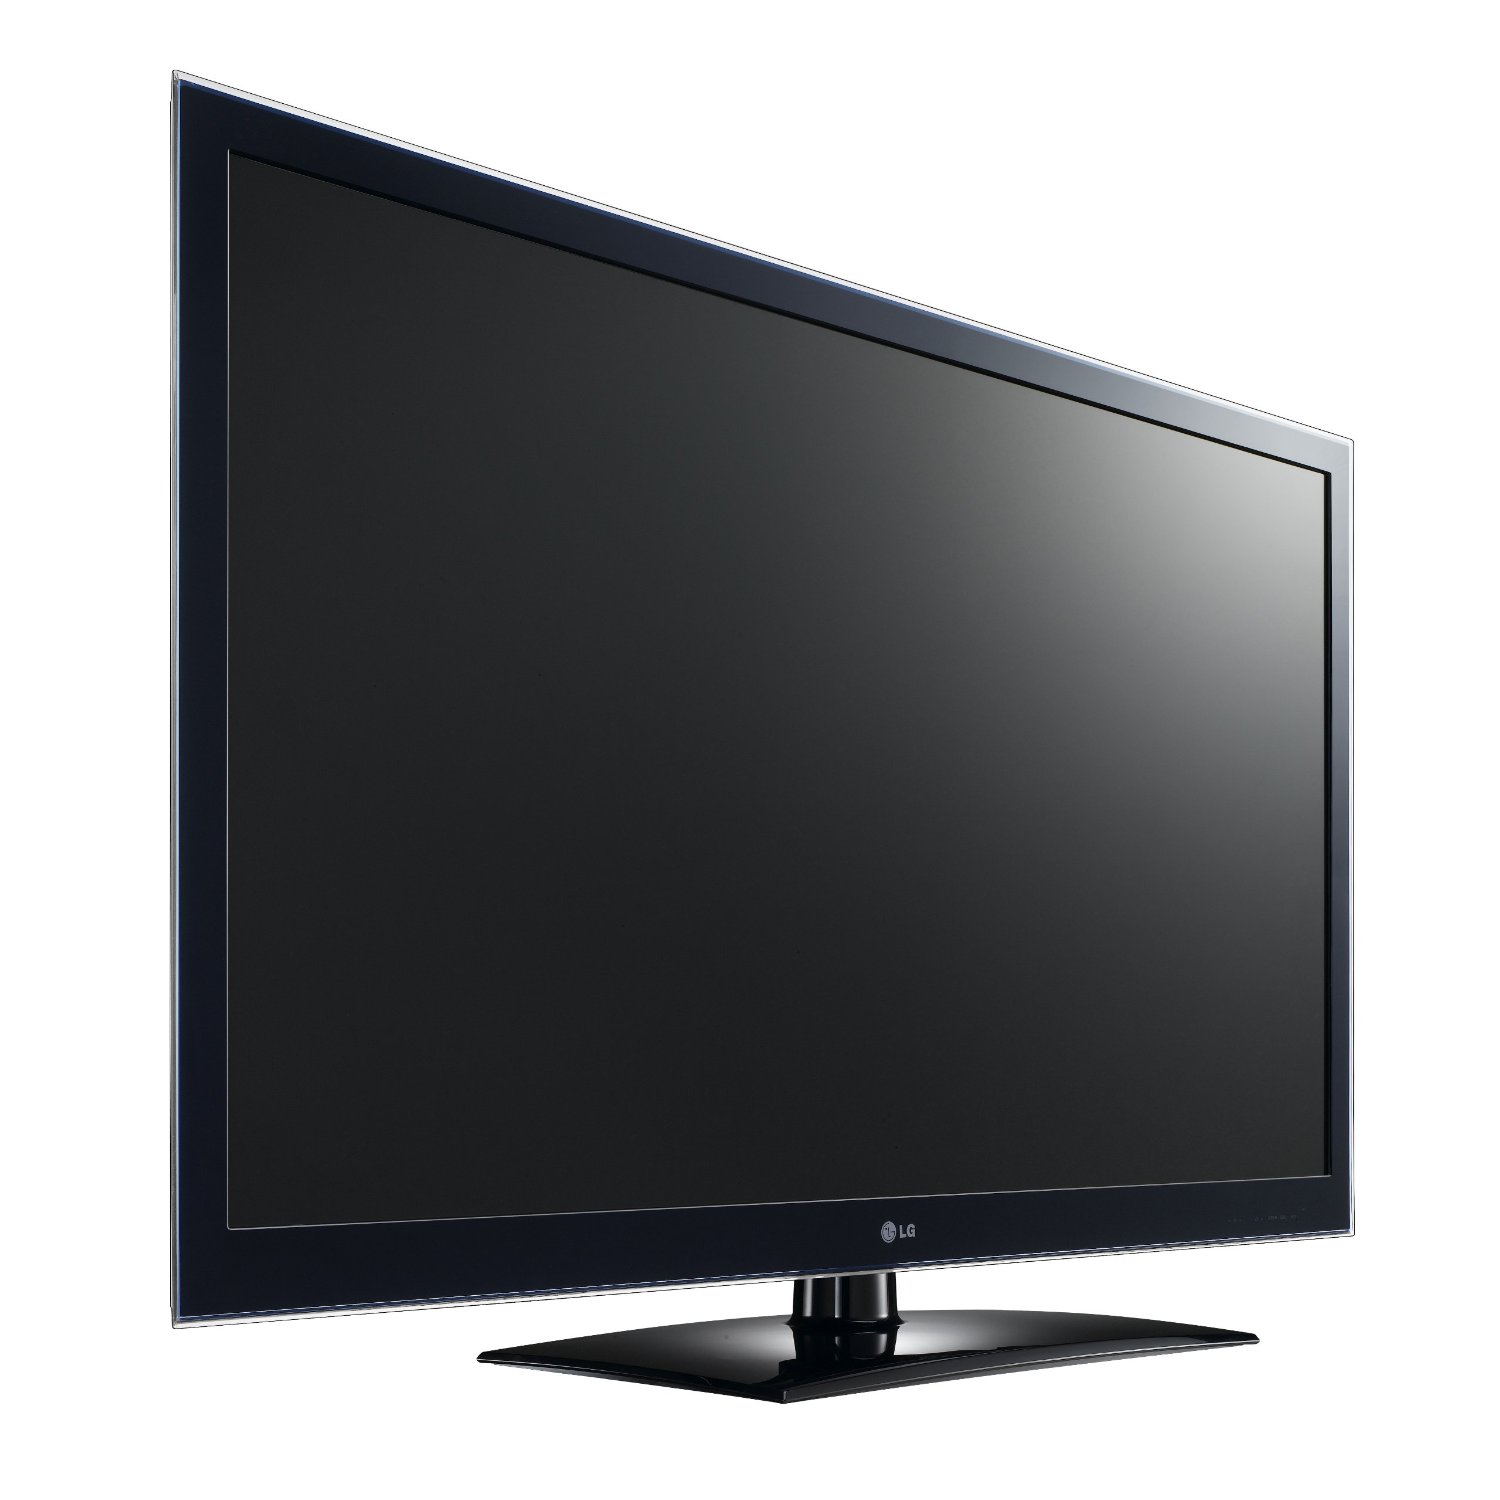 Обзор моделей телевизоров. Телевизор LG 42lv4500 42". LG Smart TV 2011. Телевизор LG 42lv571s 42". Телевизор LG LCD led 3d.